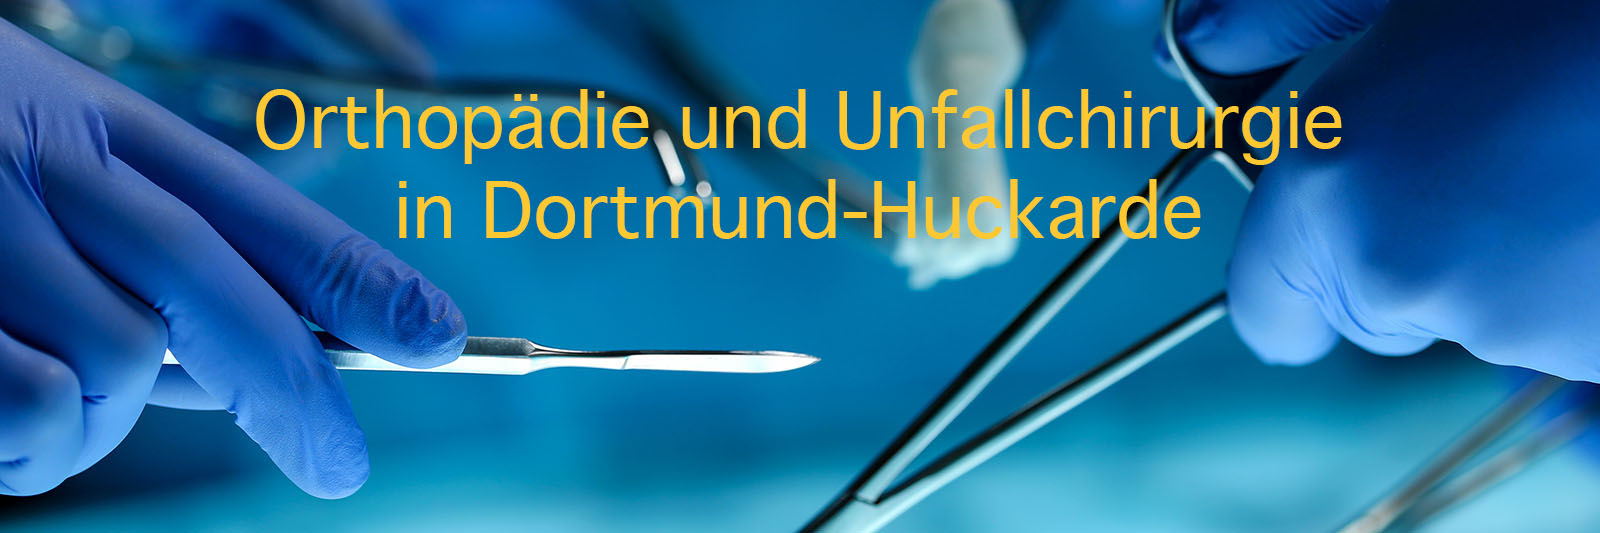 Orthopädie und Unfallchirurgie in Dortmund Huckarde